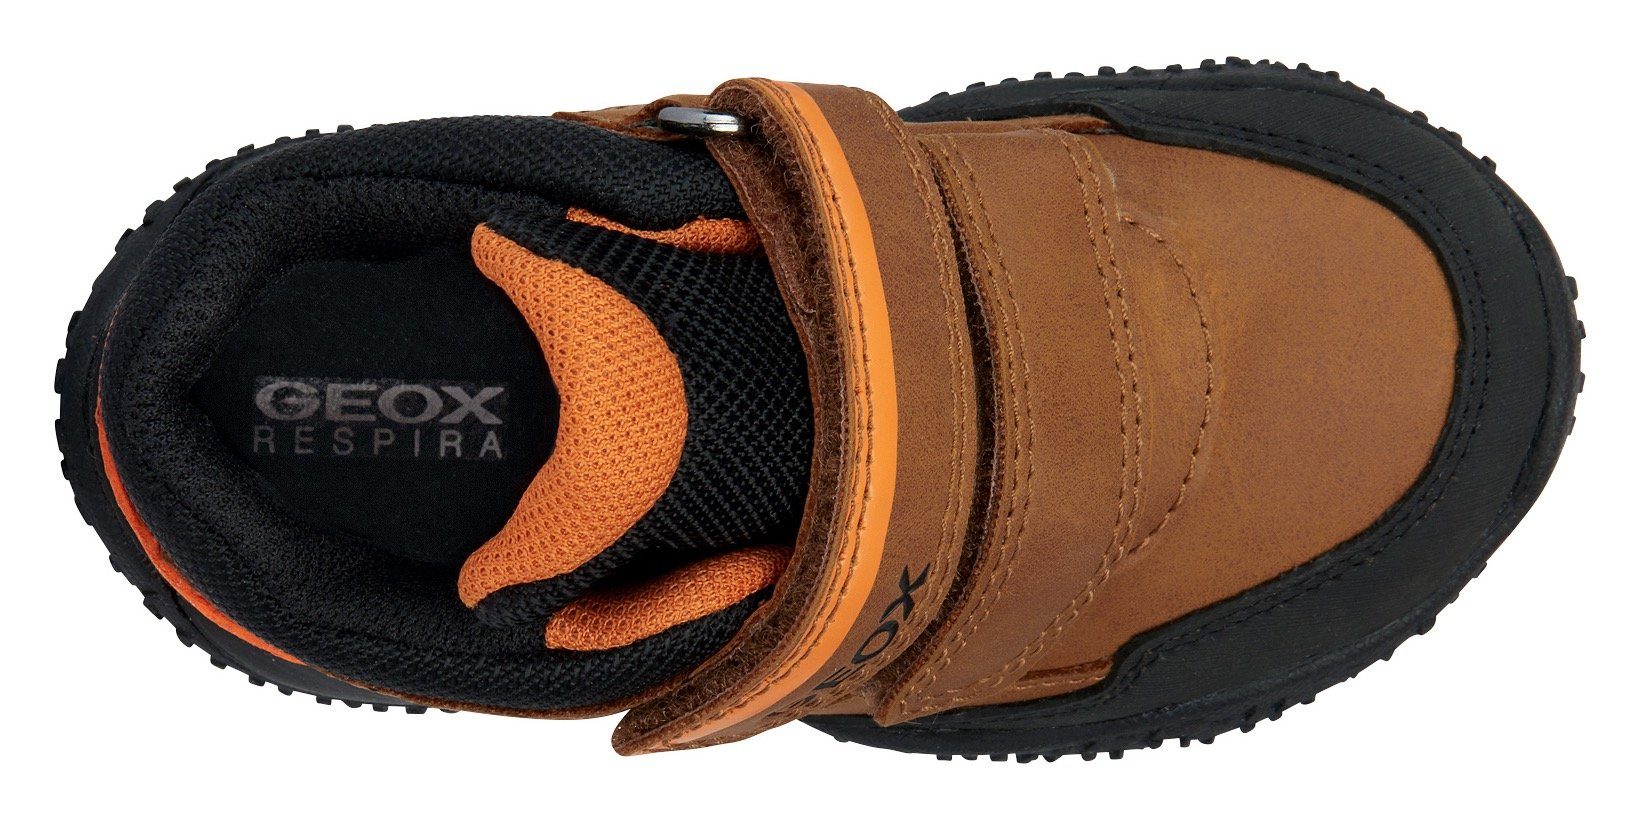 ABX Geox mit BALTIC Lauflernschuh B B TEX-Ausstattung BOY braun-schwarz-orange